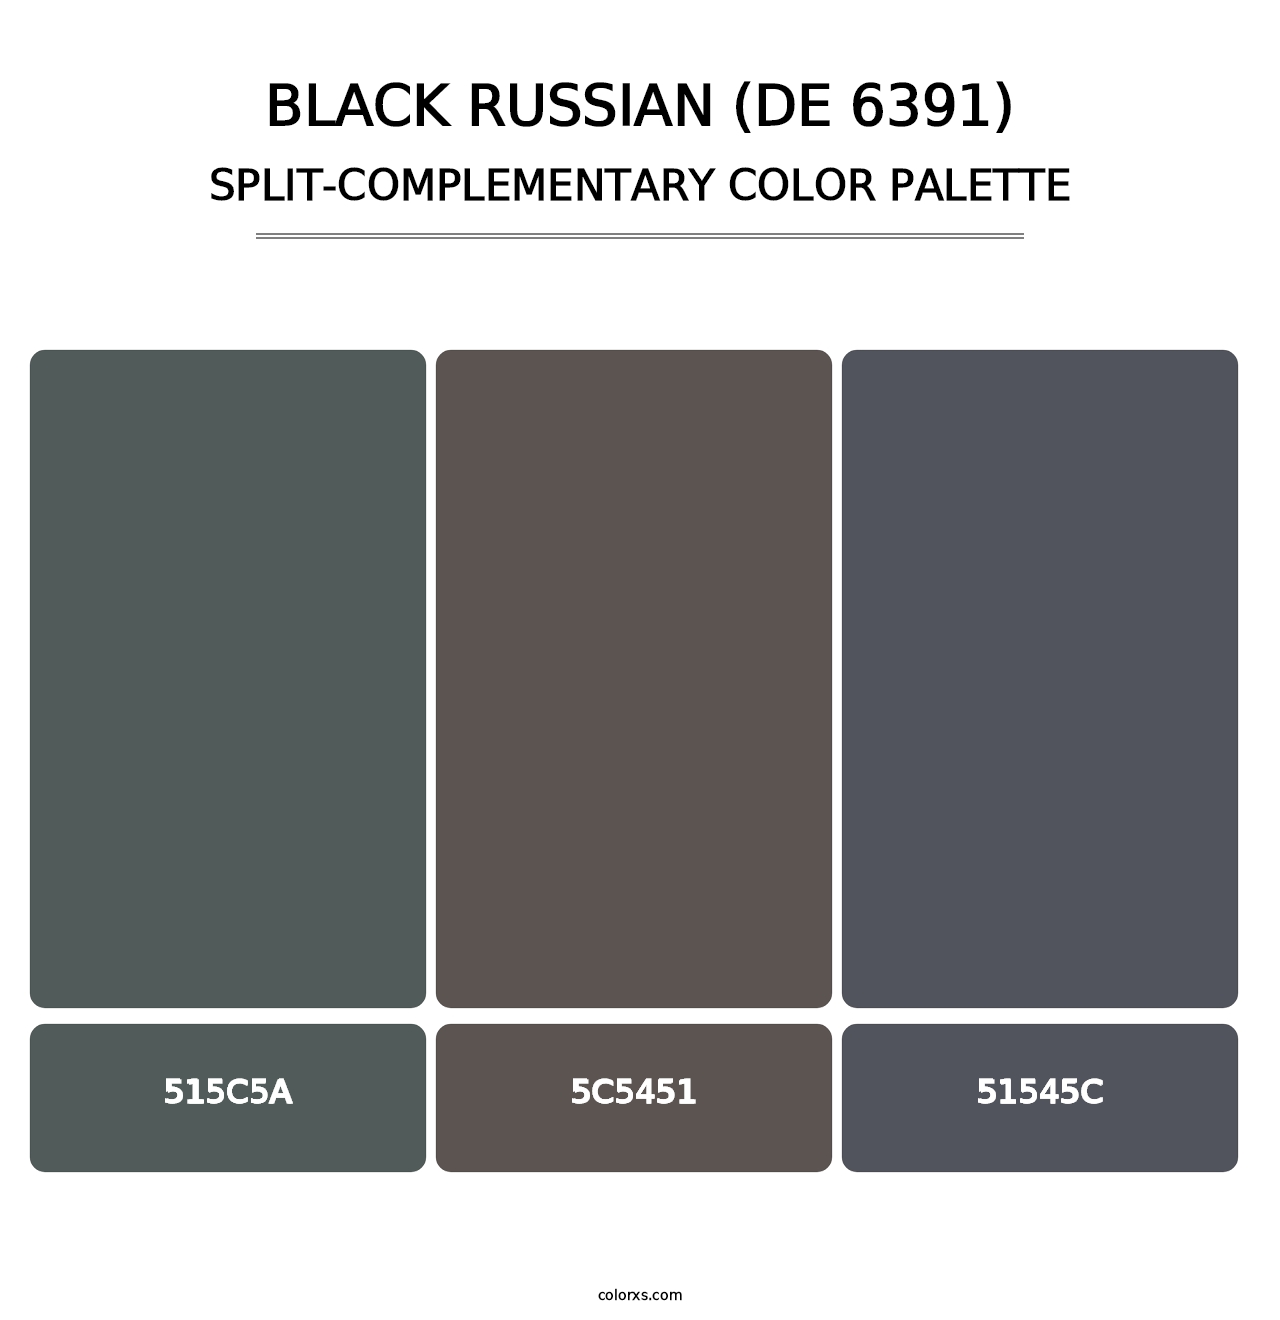 Black Russian (DE 6391) - Split-Complementary Color Palette